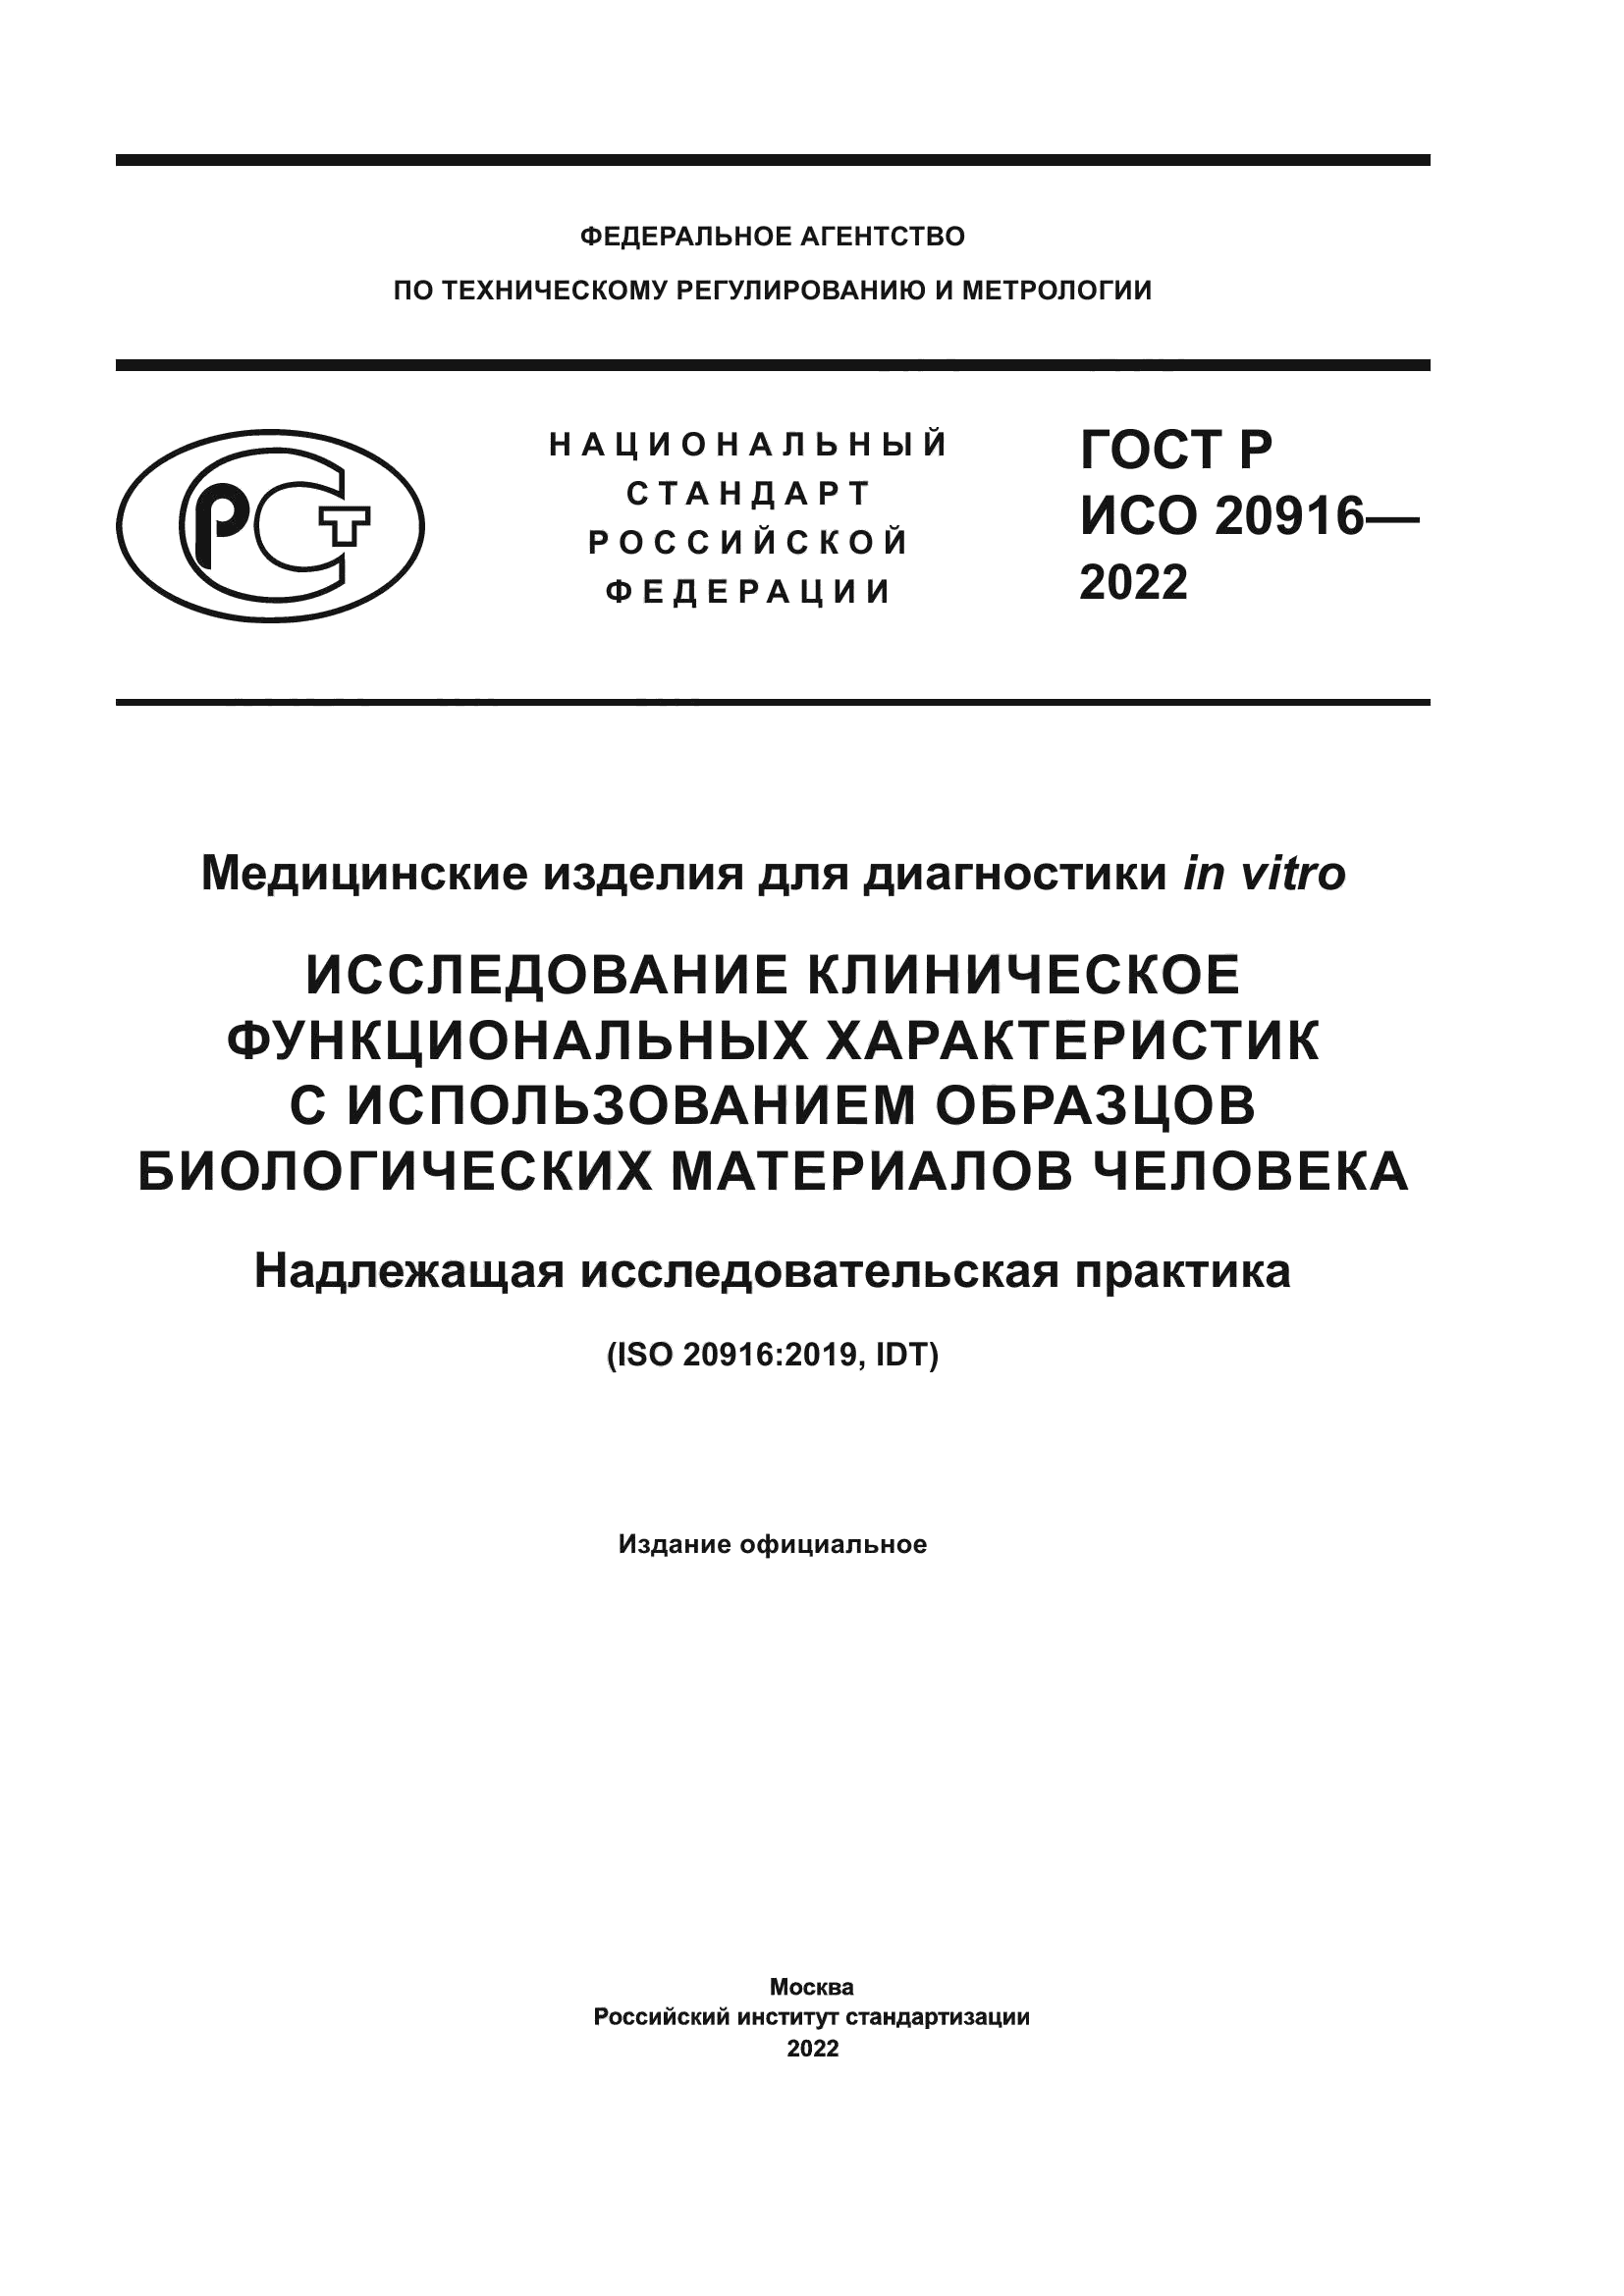 ГОСТ Р ИСО 20916-2022